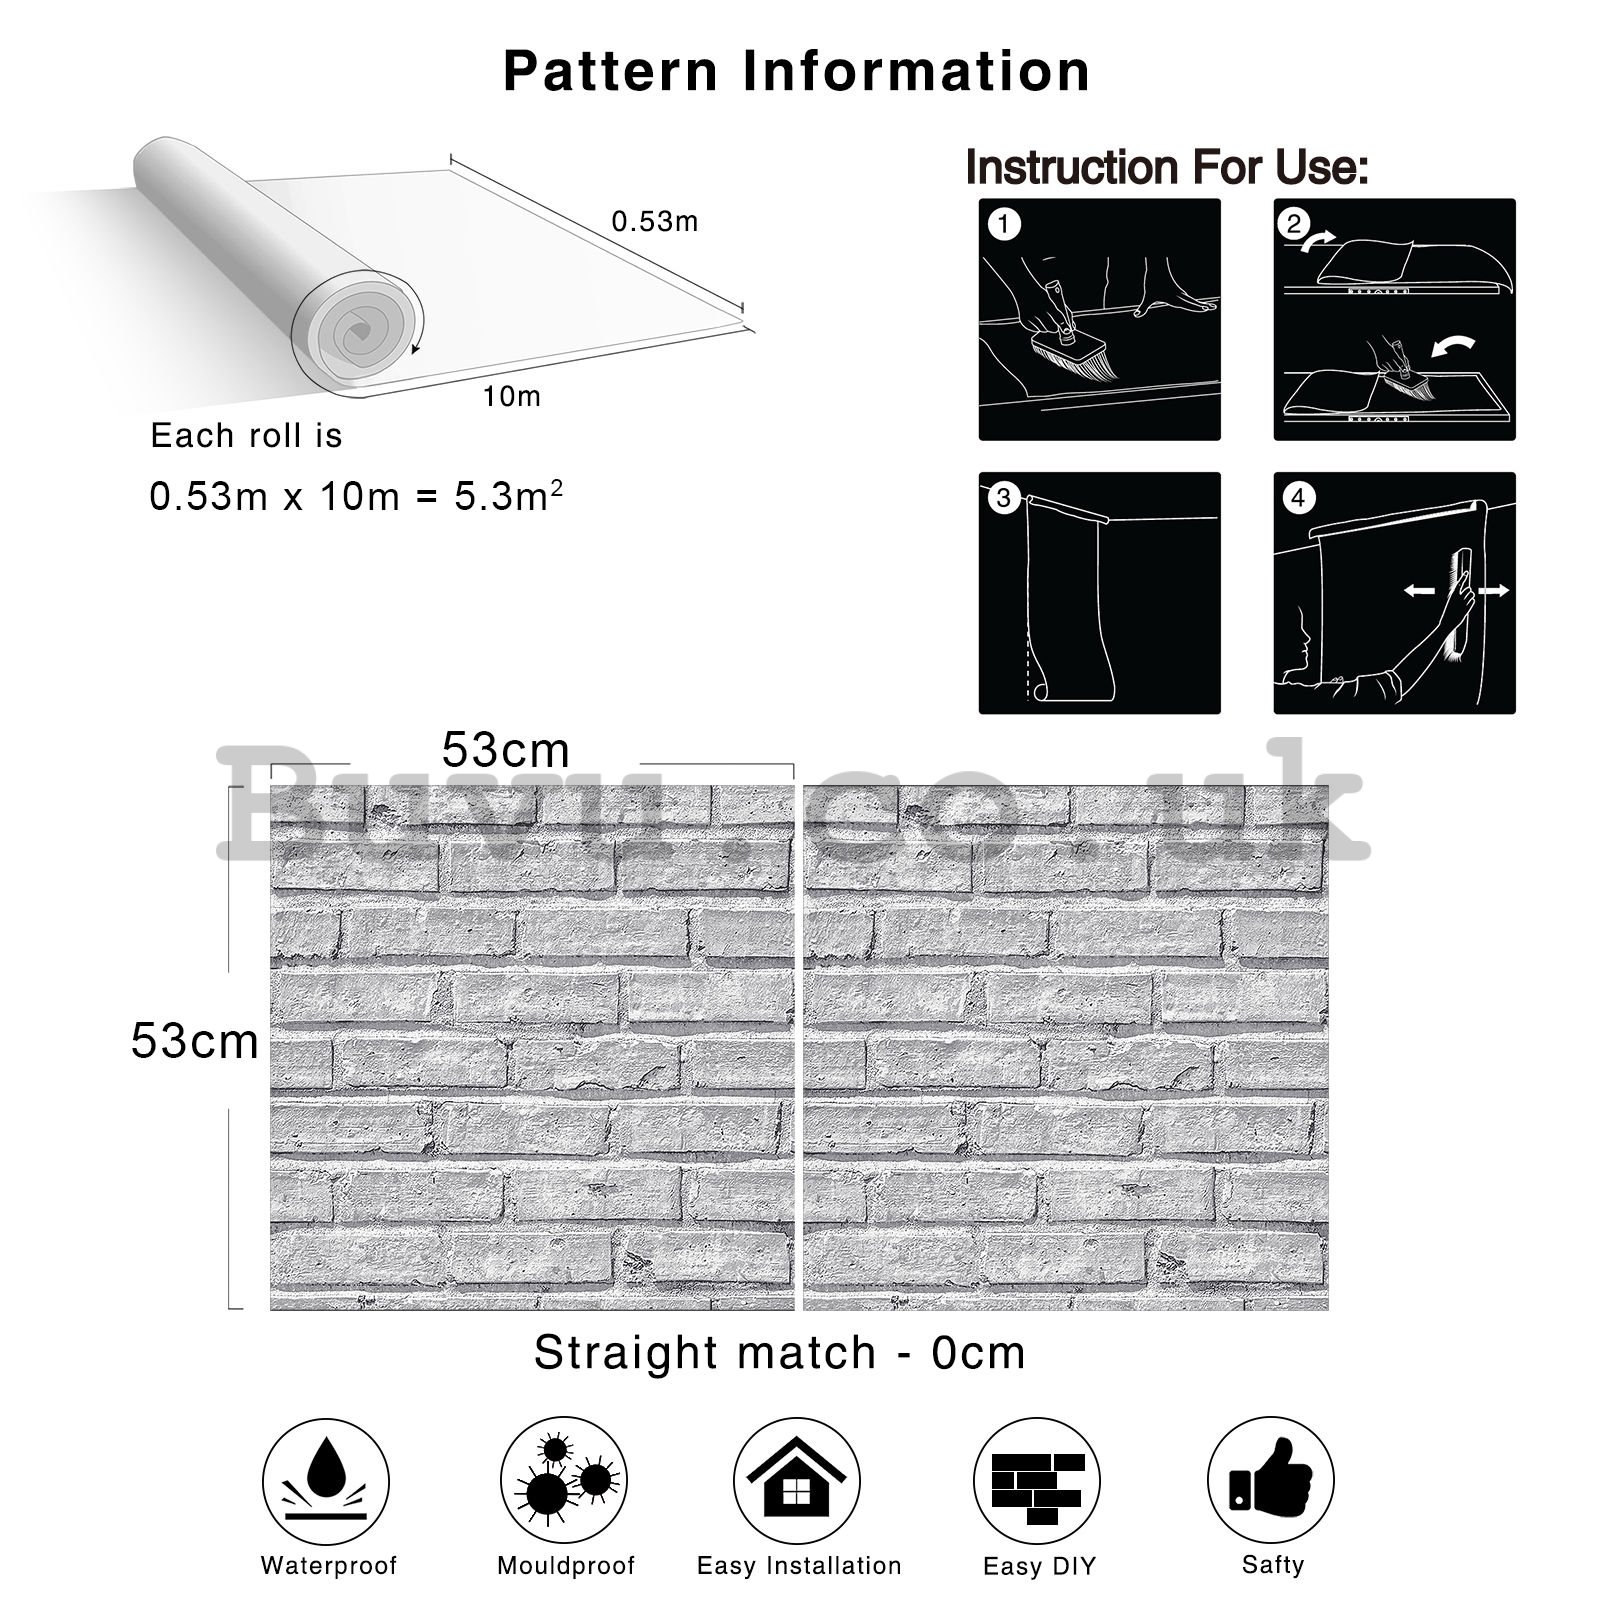 Vinyl wallpaper gray brick wall (3)